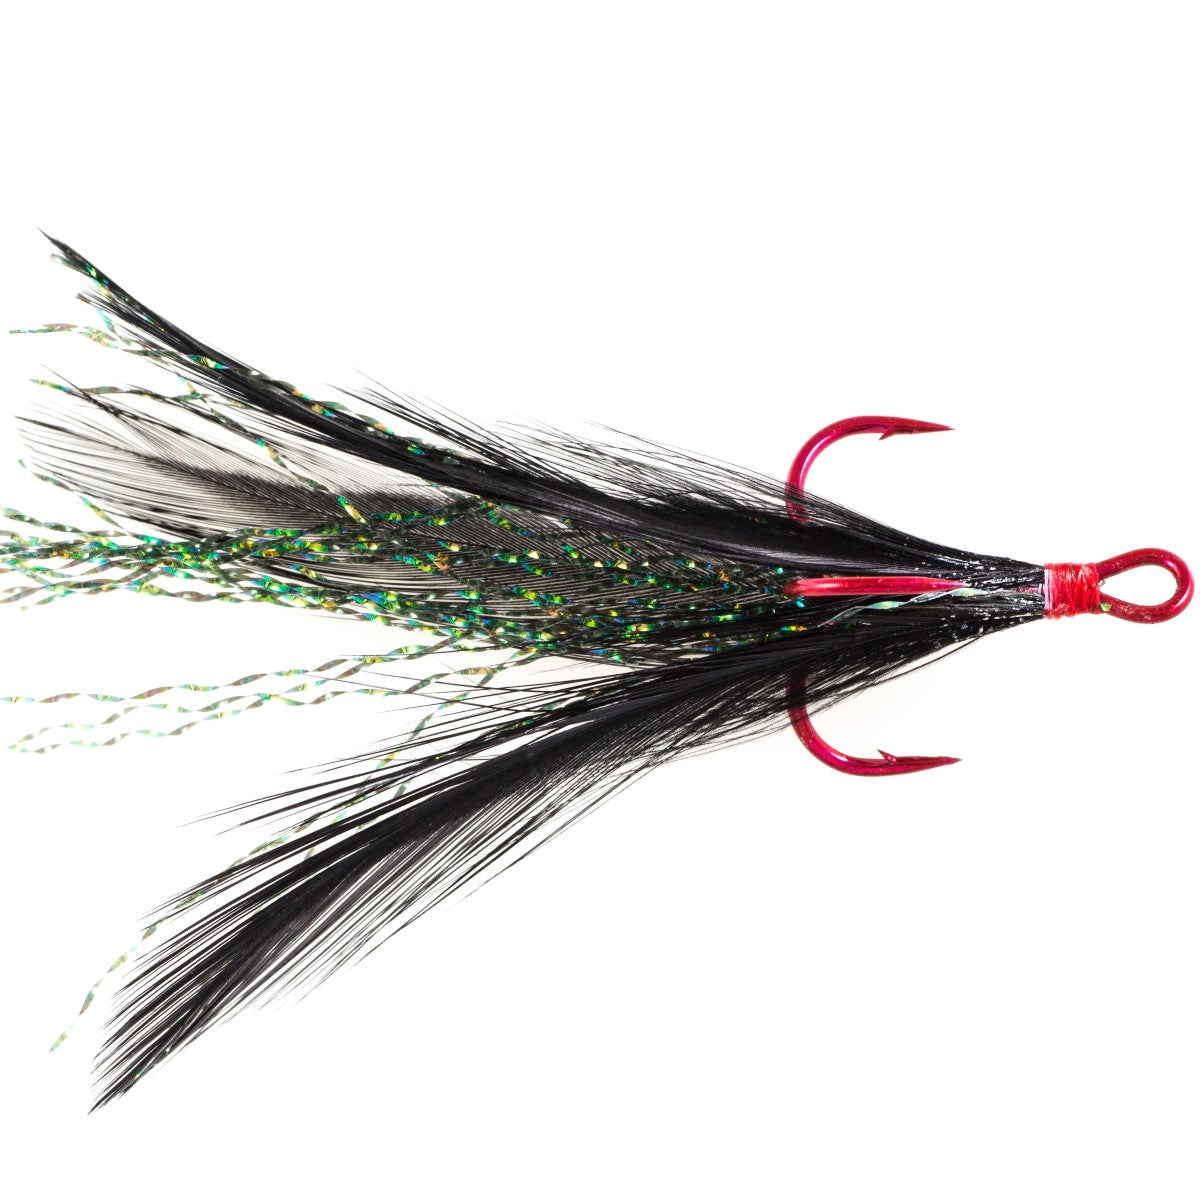 BYBYCD Feathered Treble Hooks Treble Fishing Hooks with Feather Fishing Hook  Barbed Fishhooks 1# 2# 4# 6# 8# 10# 12# Fishing Tackle(6), Hooks -   Canada